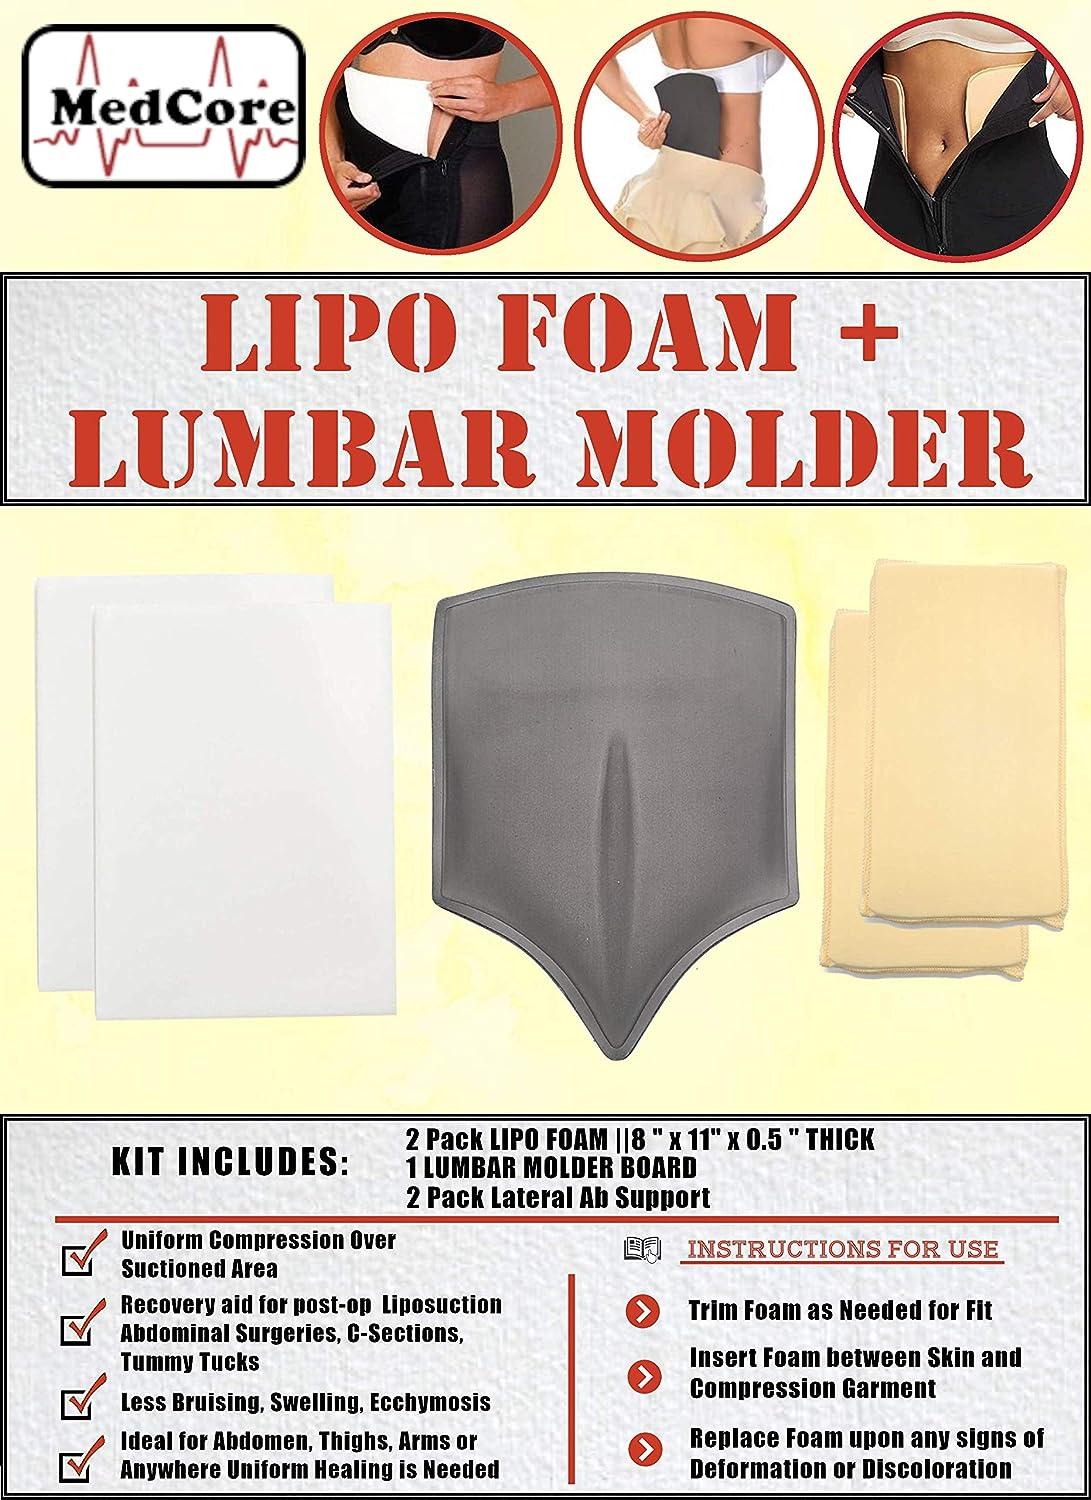 Amare Lipo Foam Post Surgical for Compression Garment